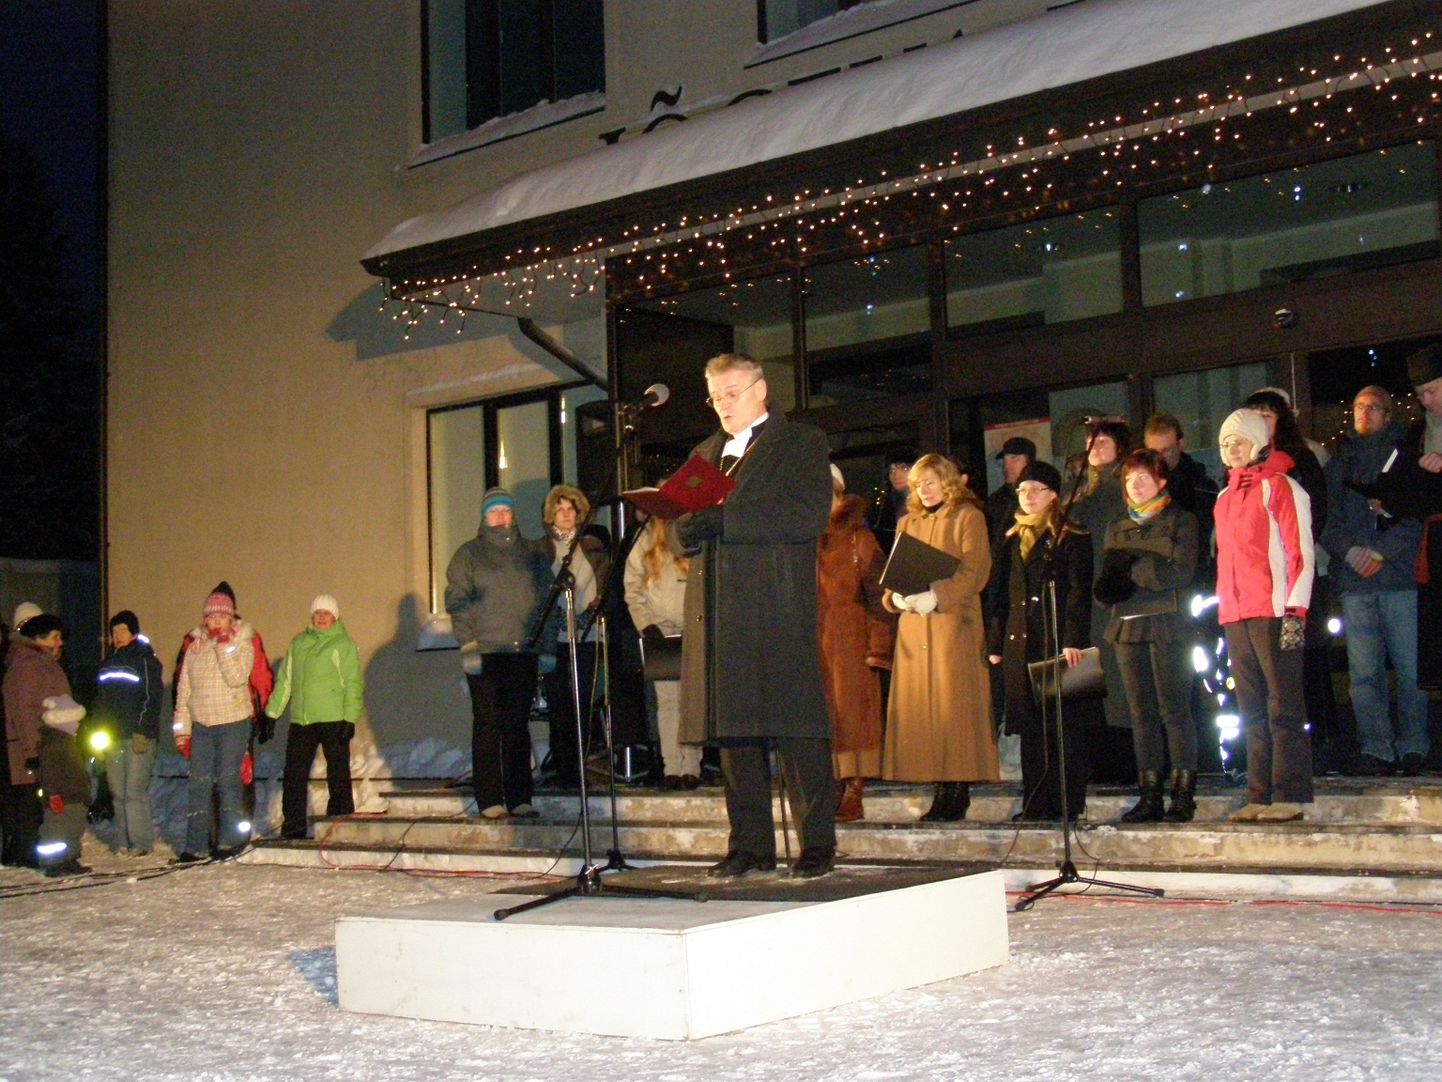 Ülemaalise jõulurahu välja kuulutamine Jõgeval. Pildil EELK peapiiskop Andres Põder.